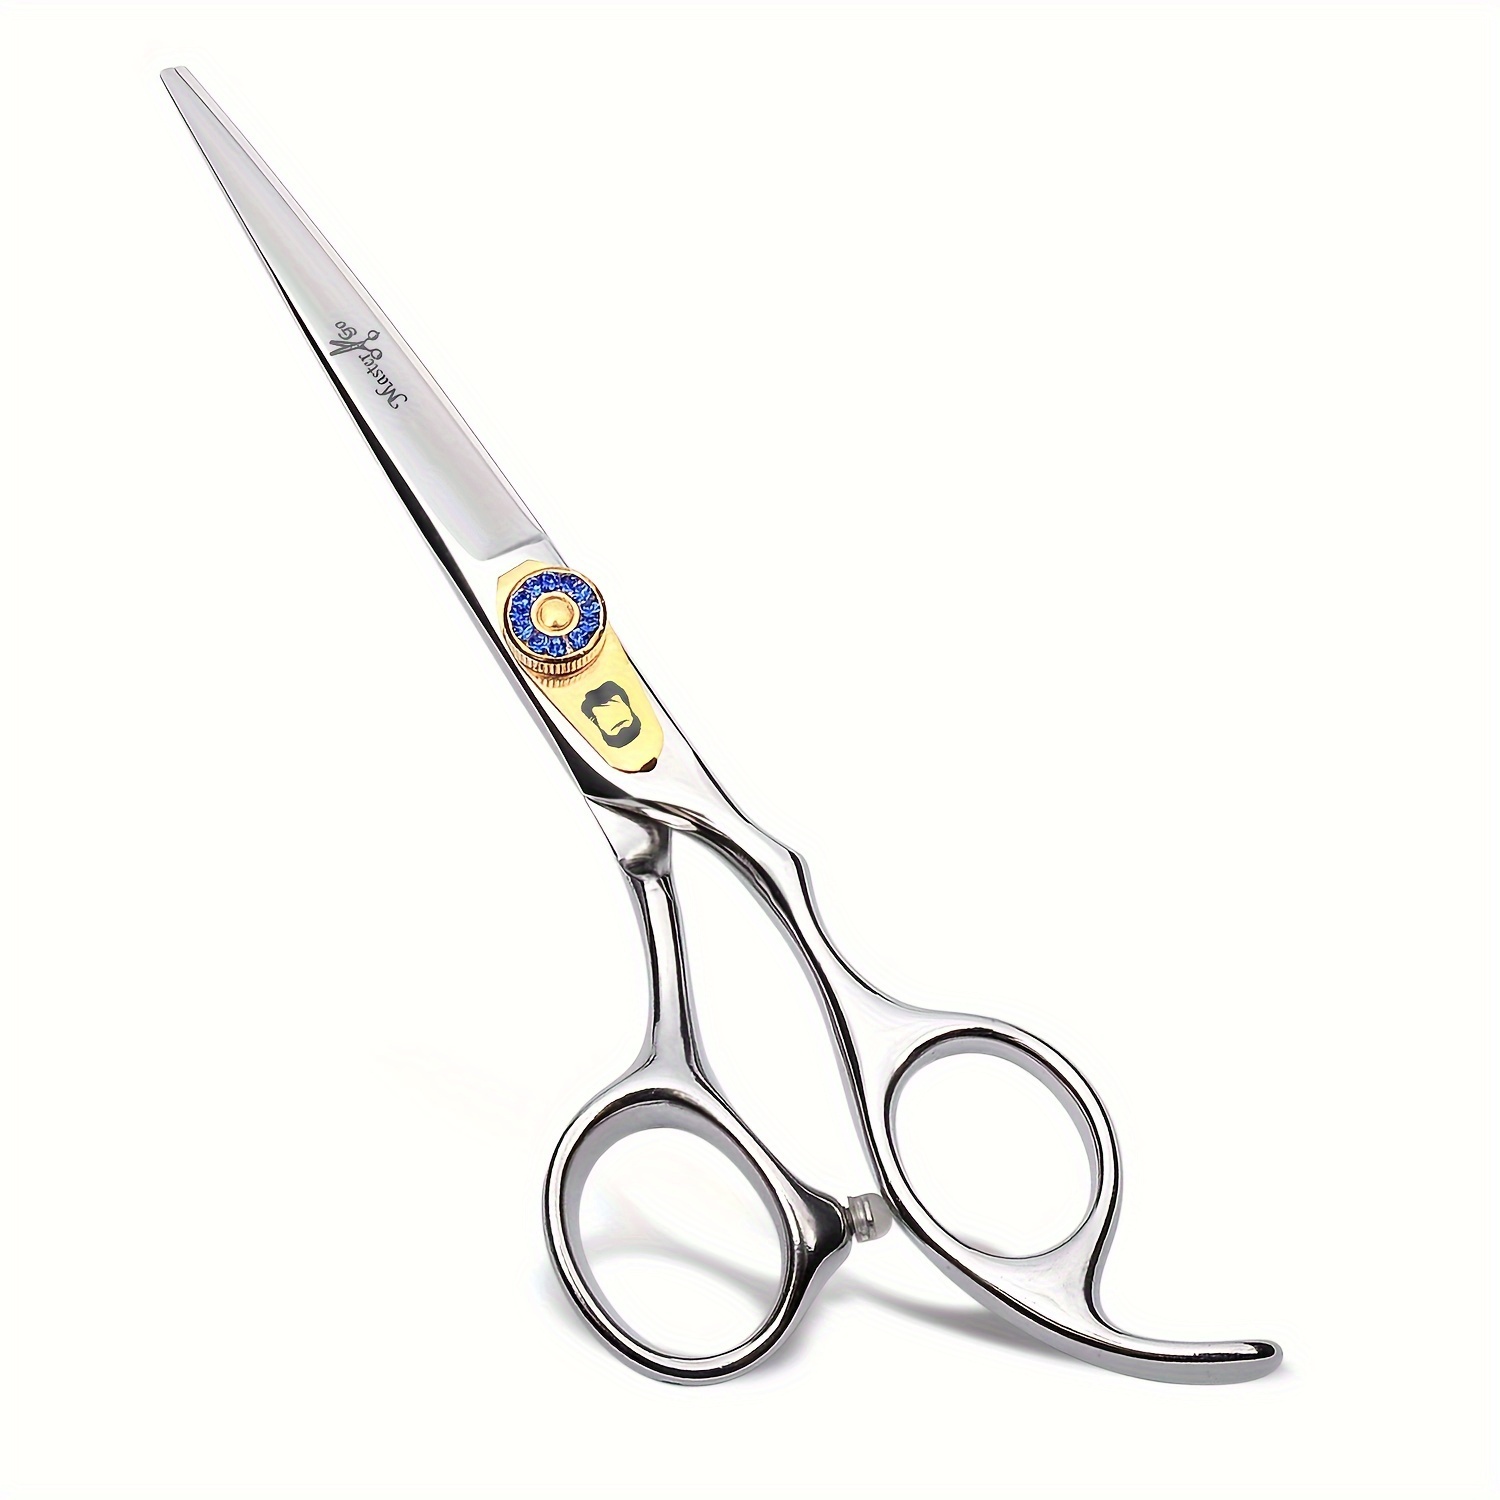 Blending Hair Scissors Hair Thinning Scissor - Temu